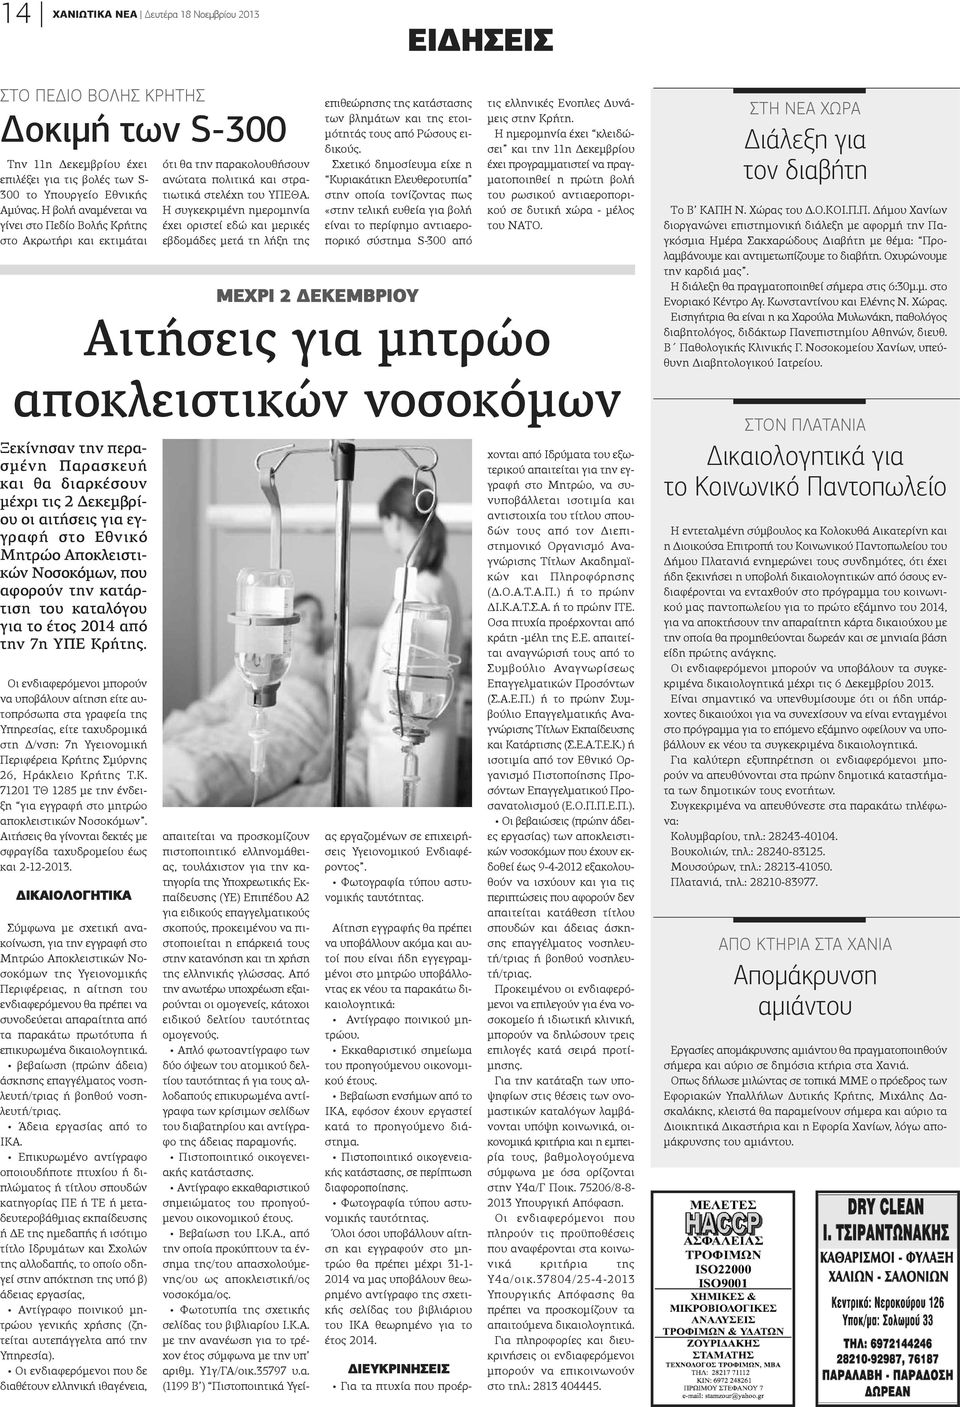 Αποκλειστιών Νοσοκόμων, που φορούν την κατάριση του καταλόγου ια το έτος 2014 από ην 7η ΥΠΕ Κρήτης.